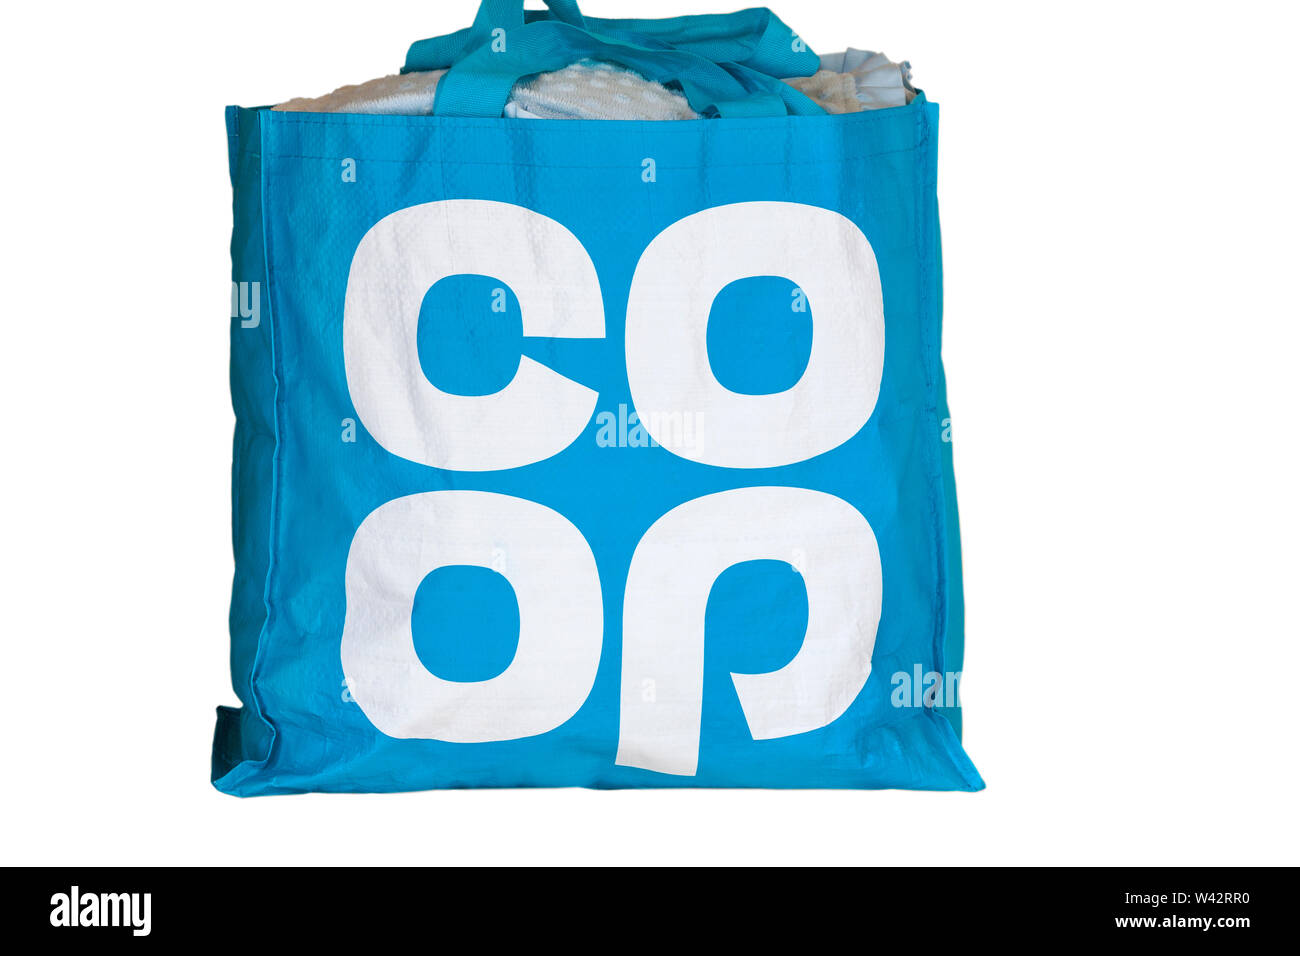 Shopping bag coop immagini e fotografie stock ad alta risoluzione - Alamy